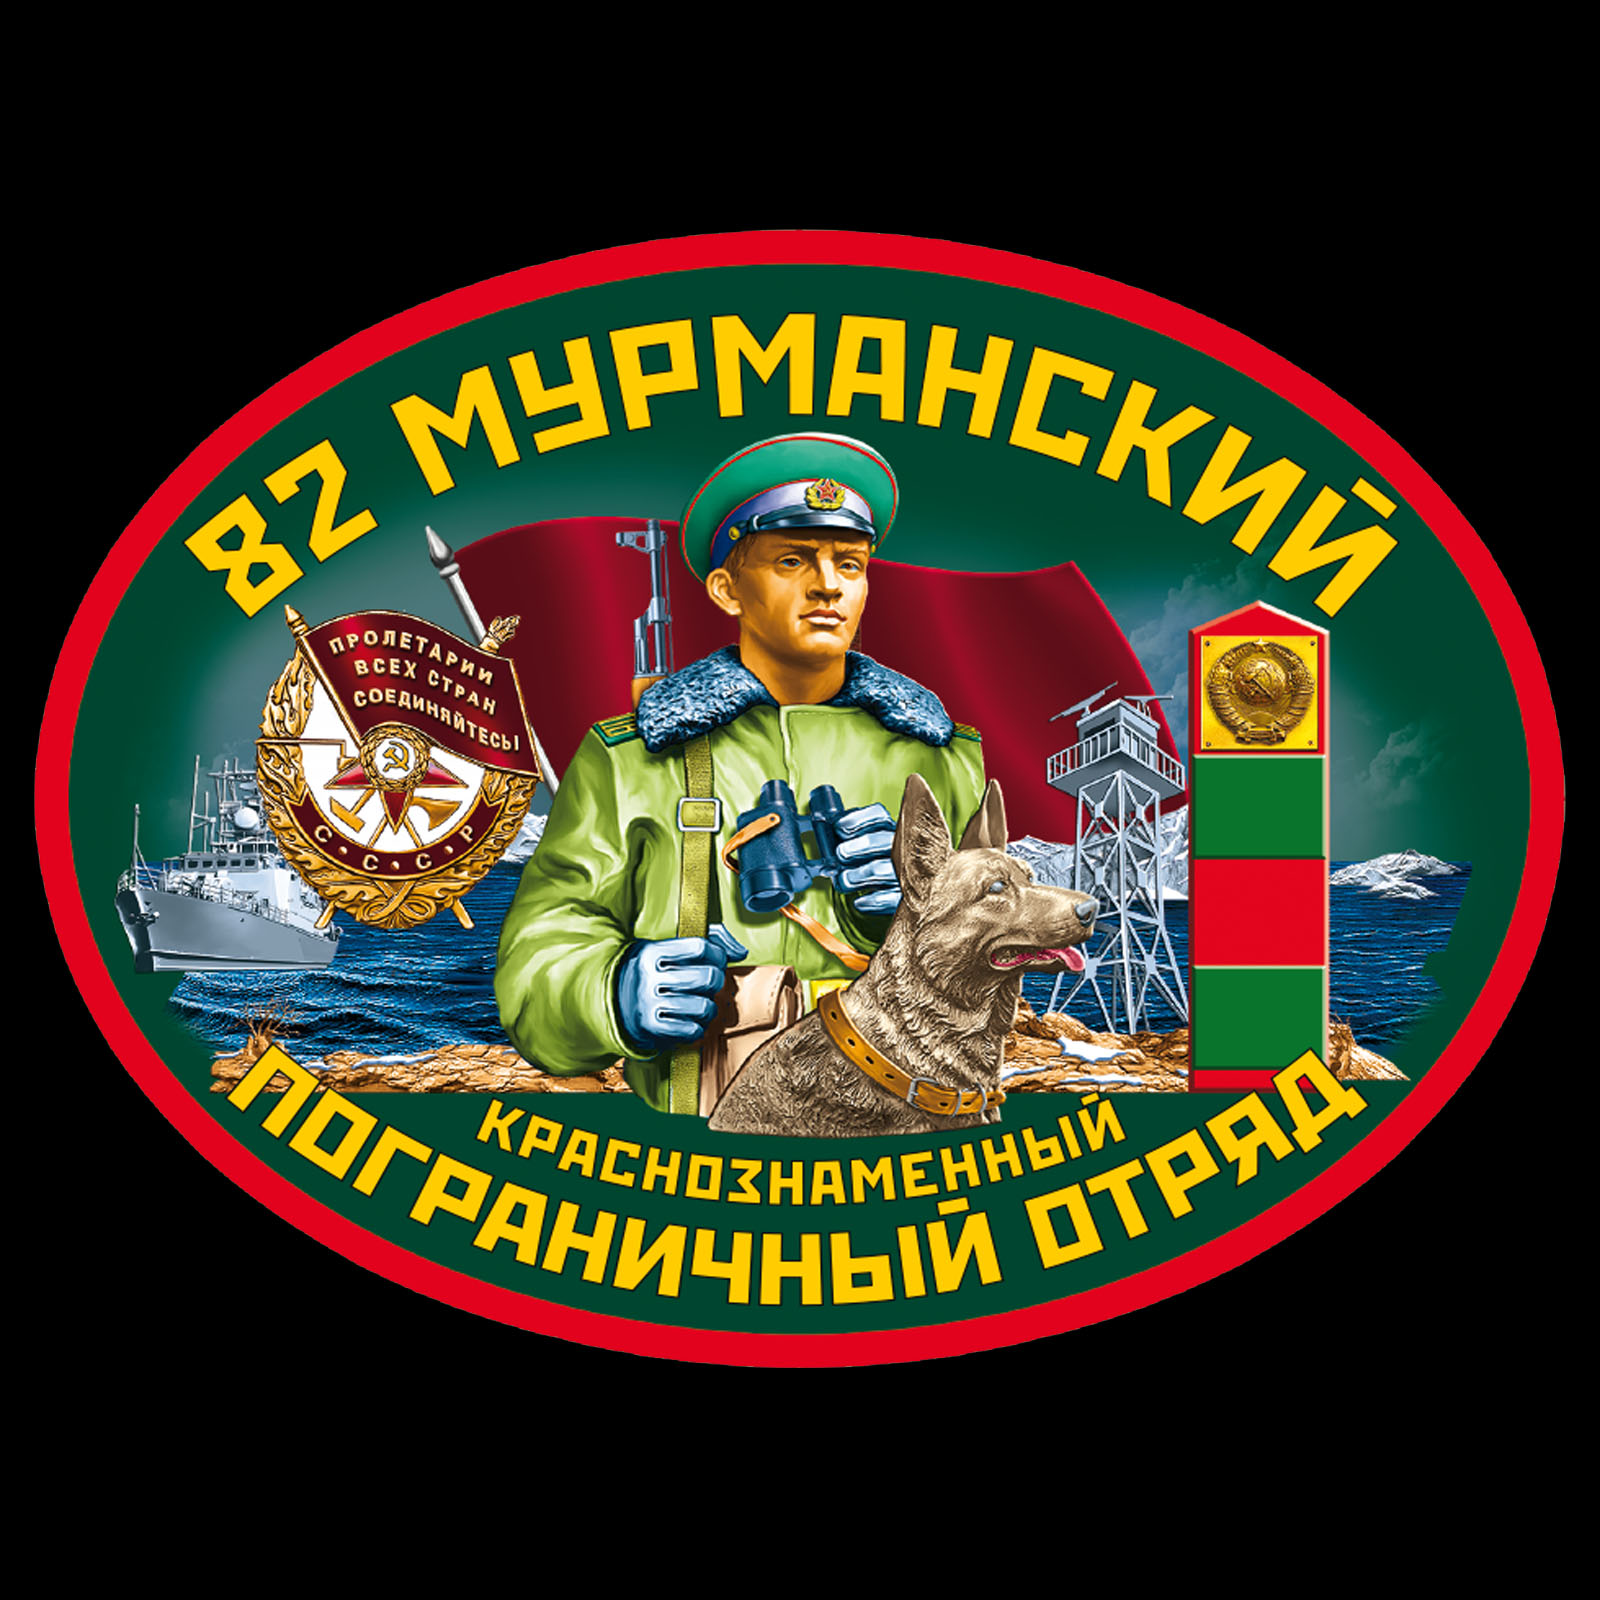 Чёрная футболка "82 Мурманский пограничный отряд" 